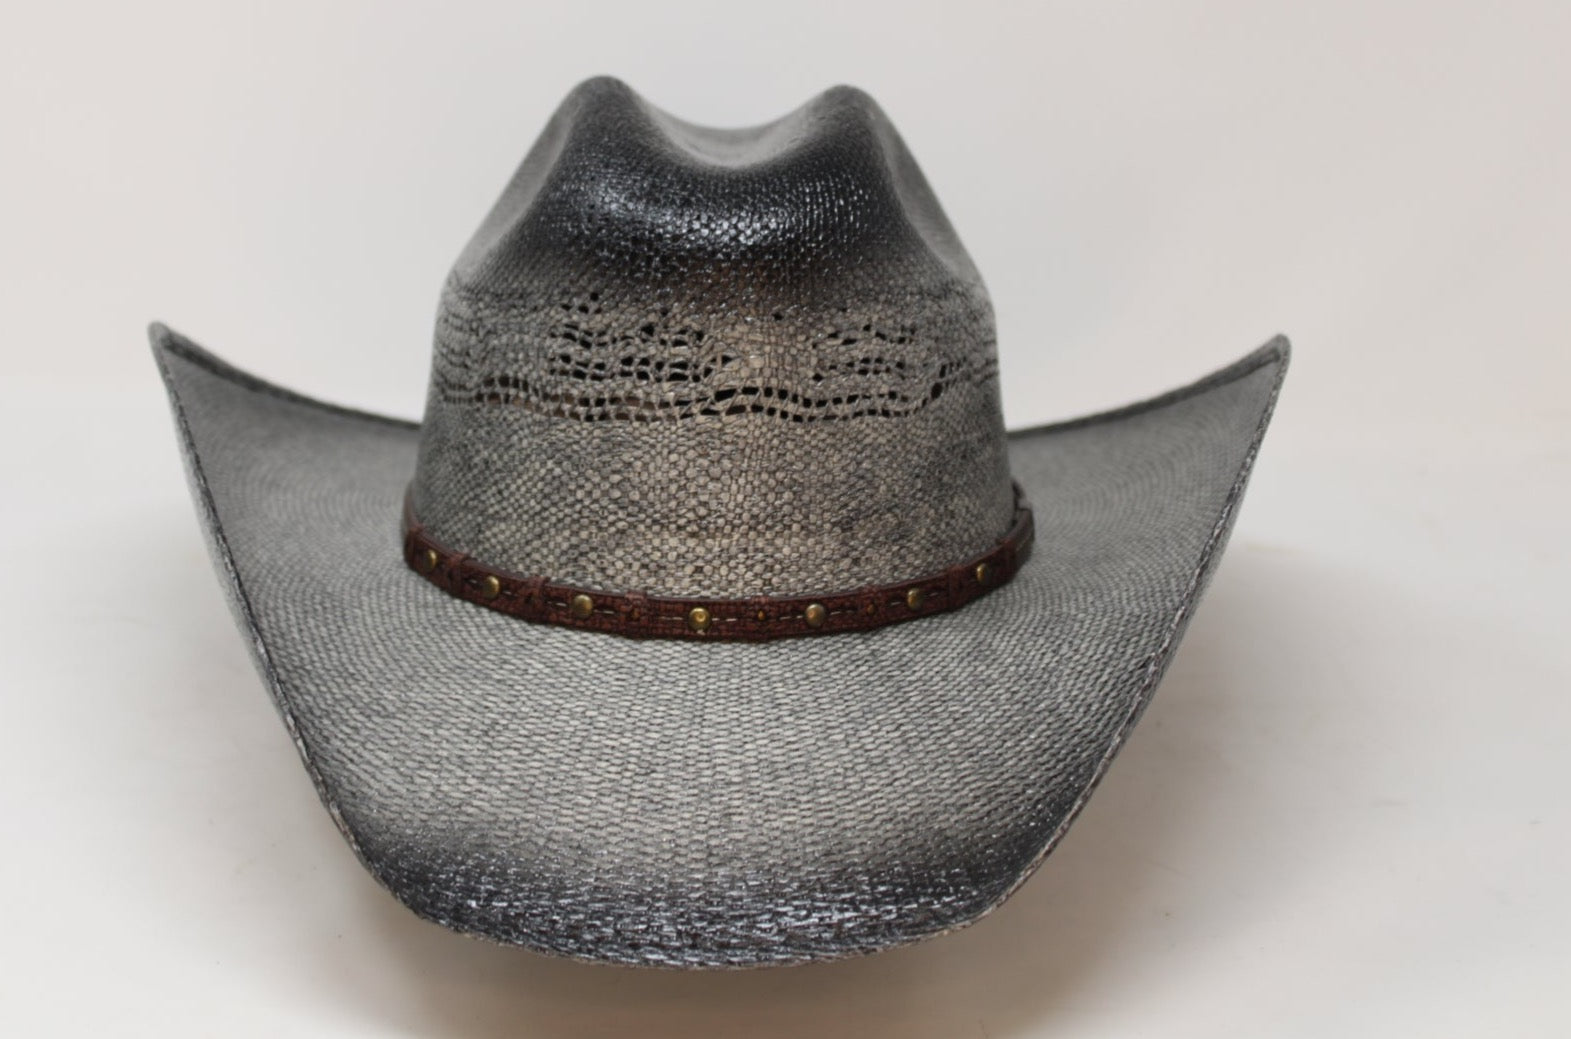 "Daniel" Straw Cowboy Hat